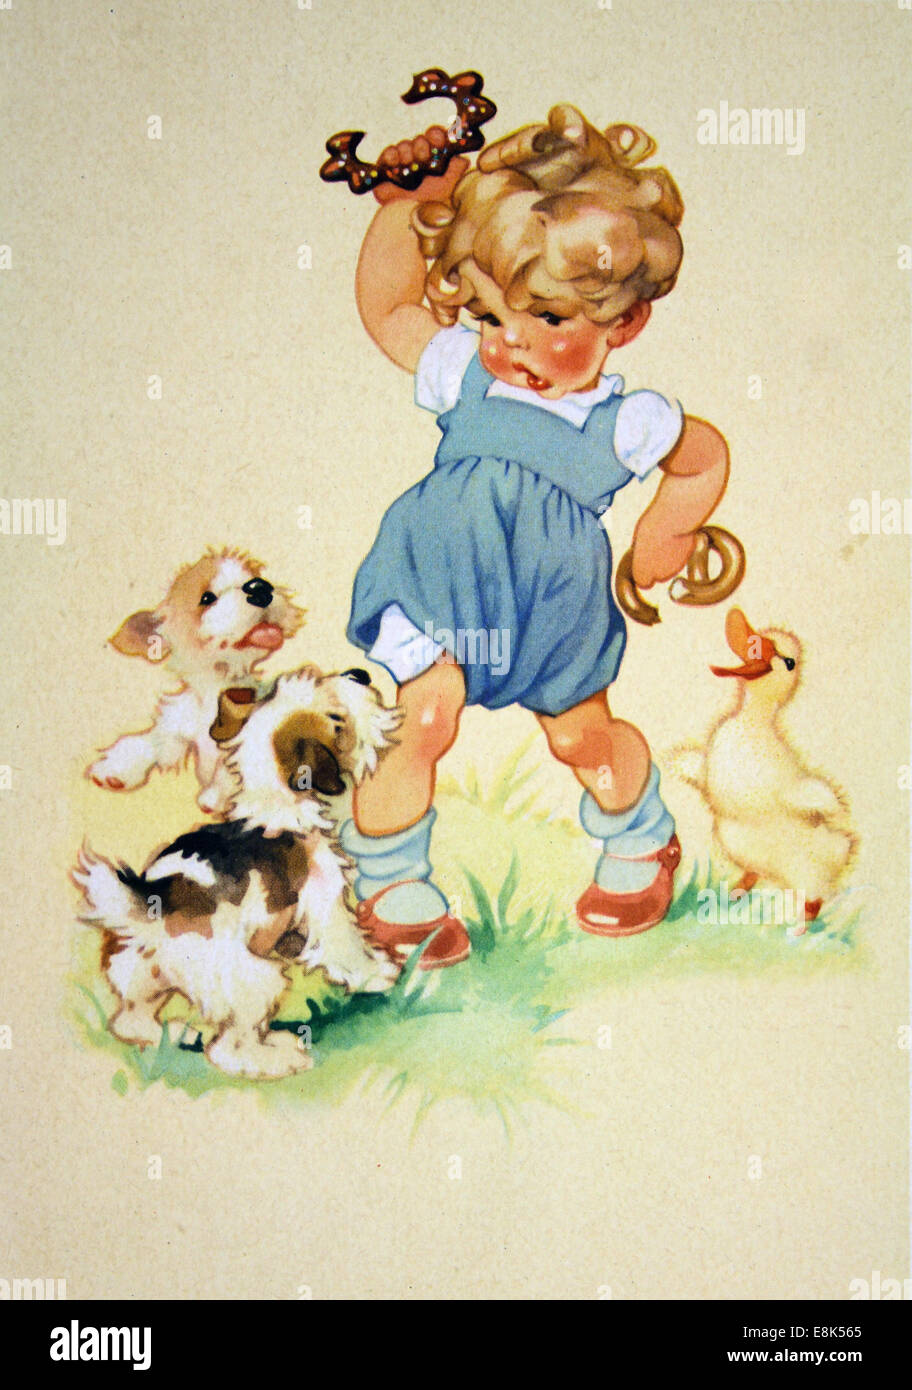 Dicembre 2, 2009 - Cartolina stampato nella RDT mostra di cuccioli e oca cercando di rob ragazze panini, circa 1952 © Igor Golovniov/ZUMA filo/ZUMAPRESS.com/Alamy Live News Foto Stock